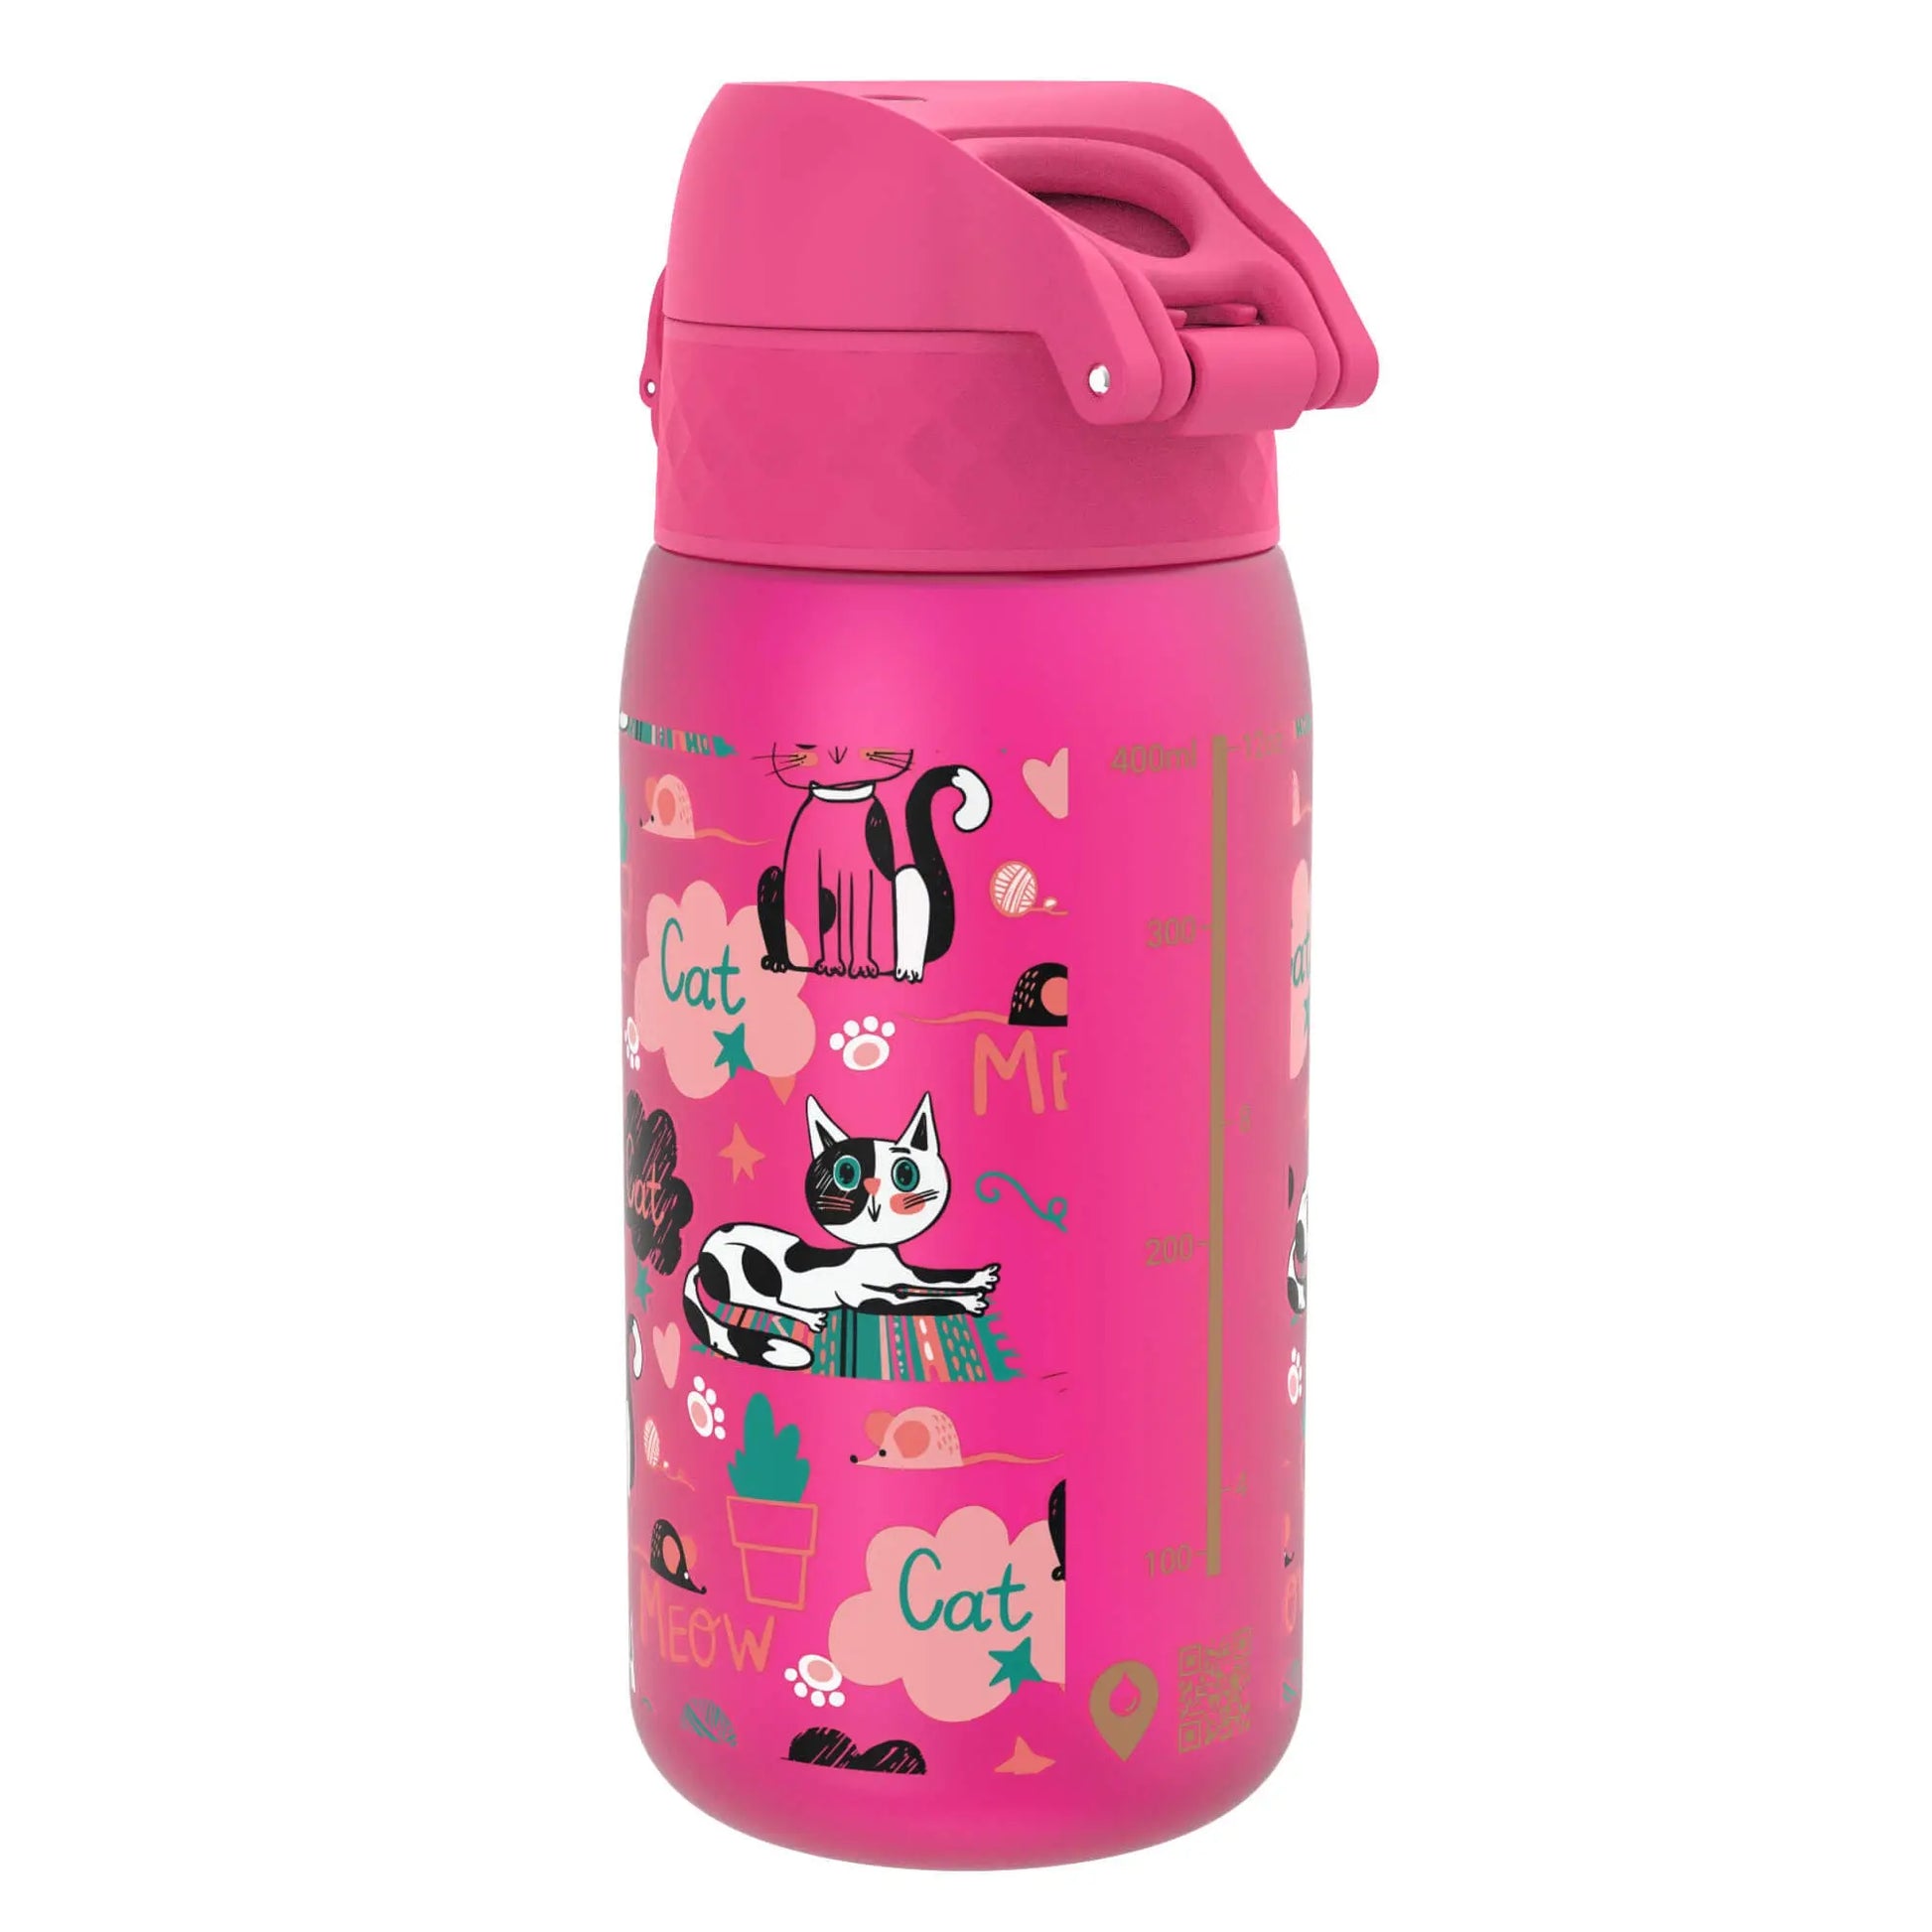 Leak Proof Kids Water Bottle, Recyclon™, Kittens, 350ml (12oz) Ion8